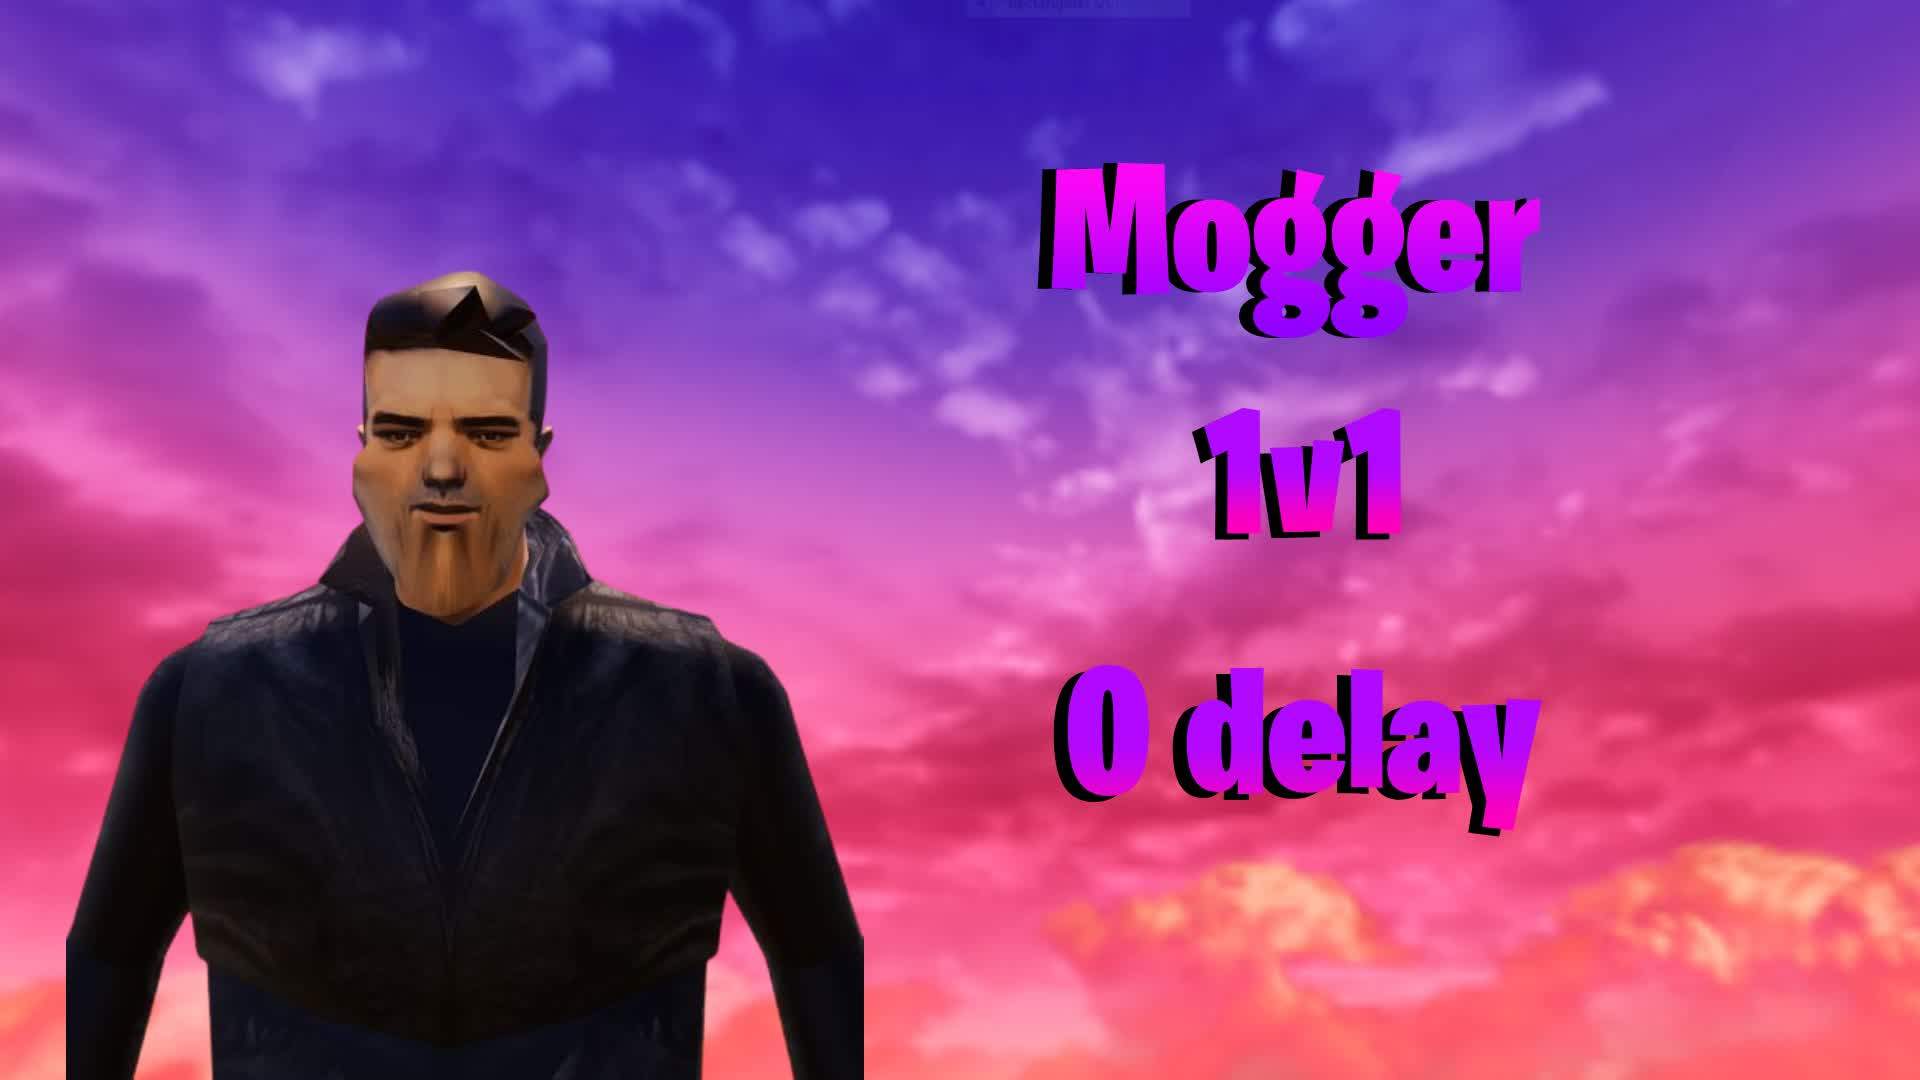 mogger 1v1 ( 0 delay )